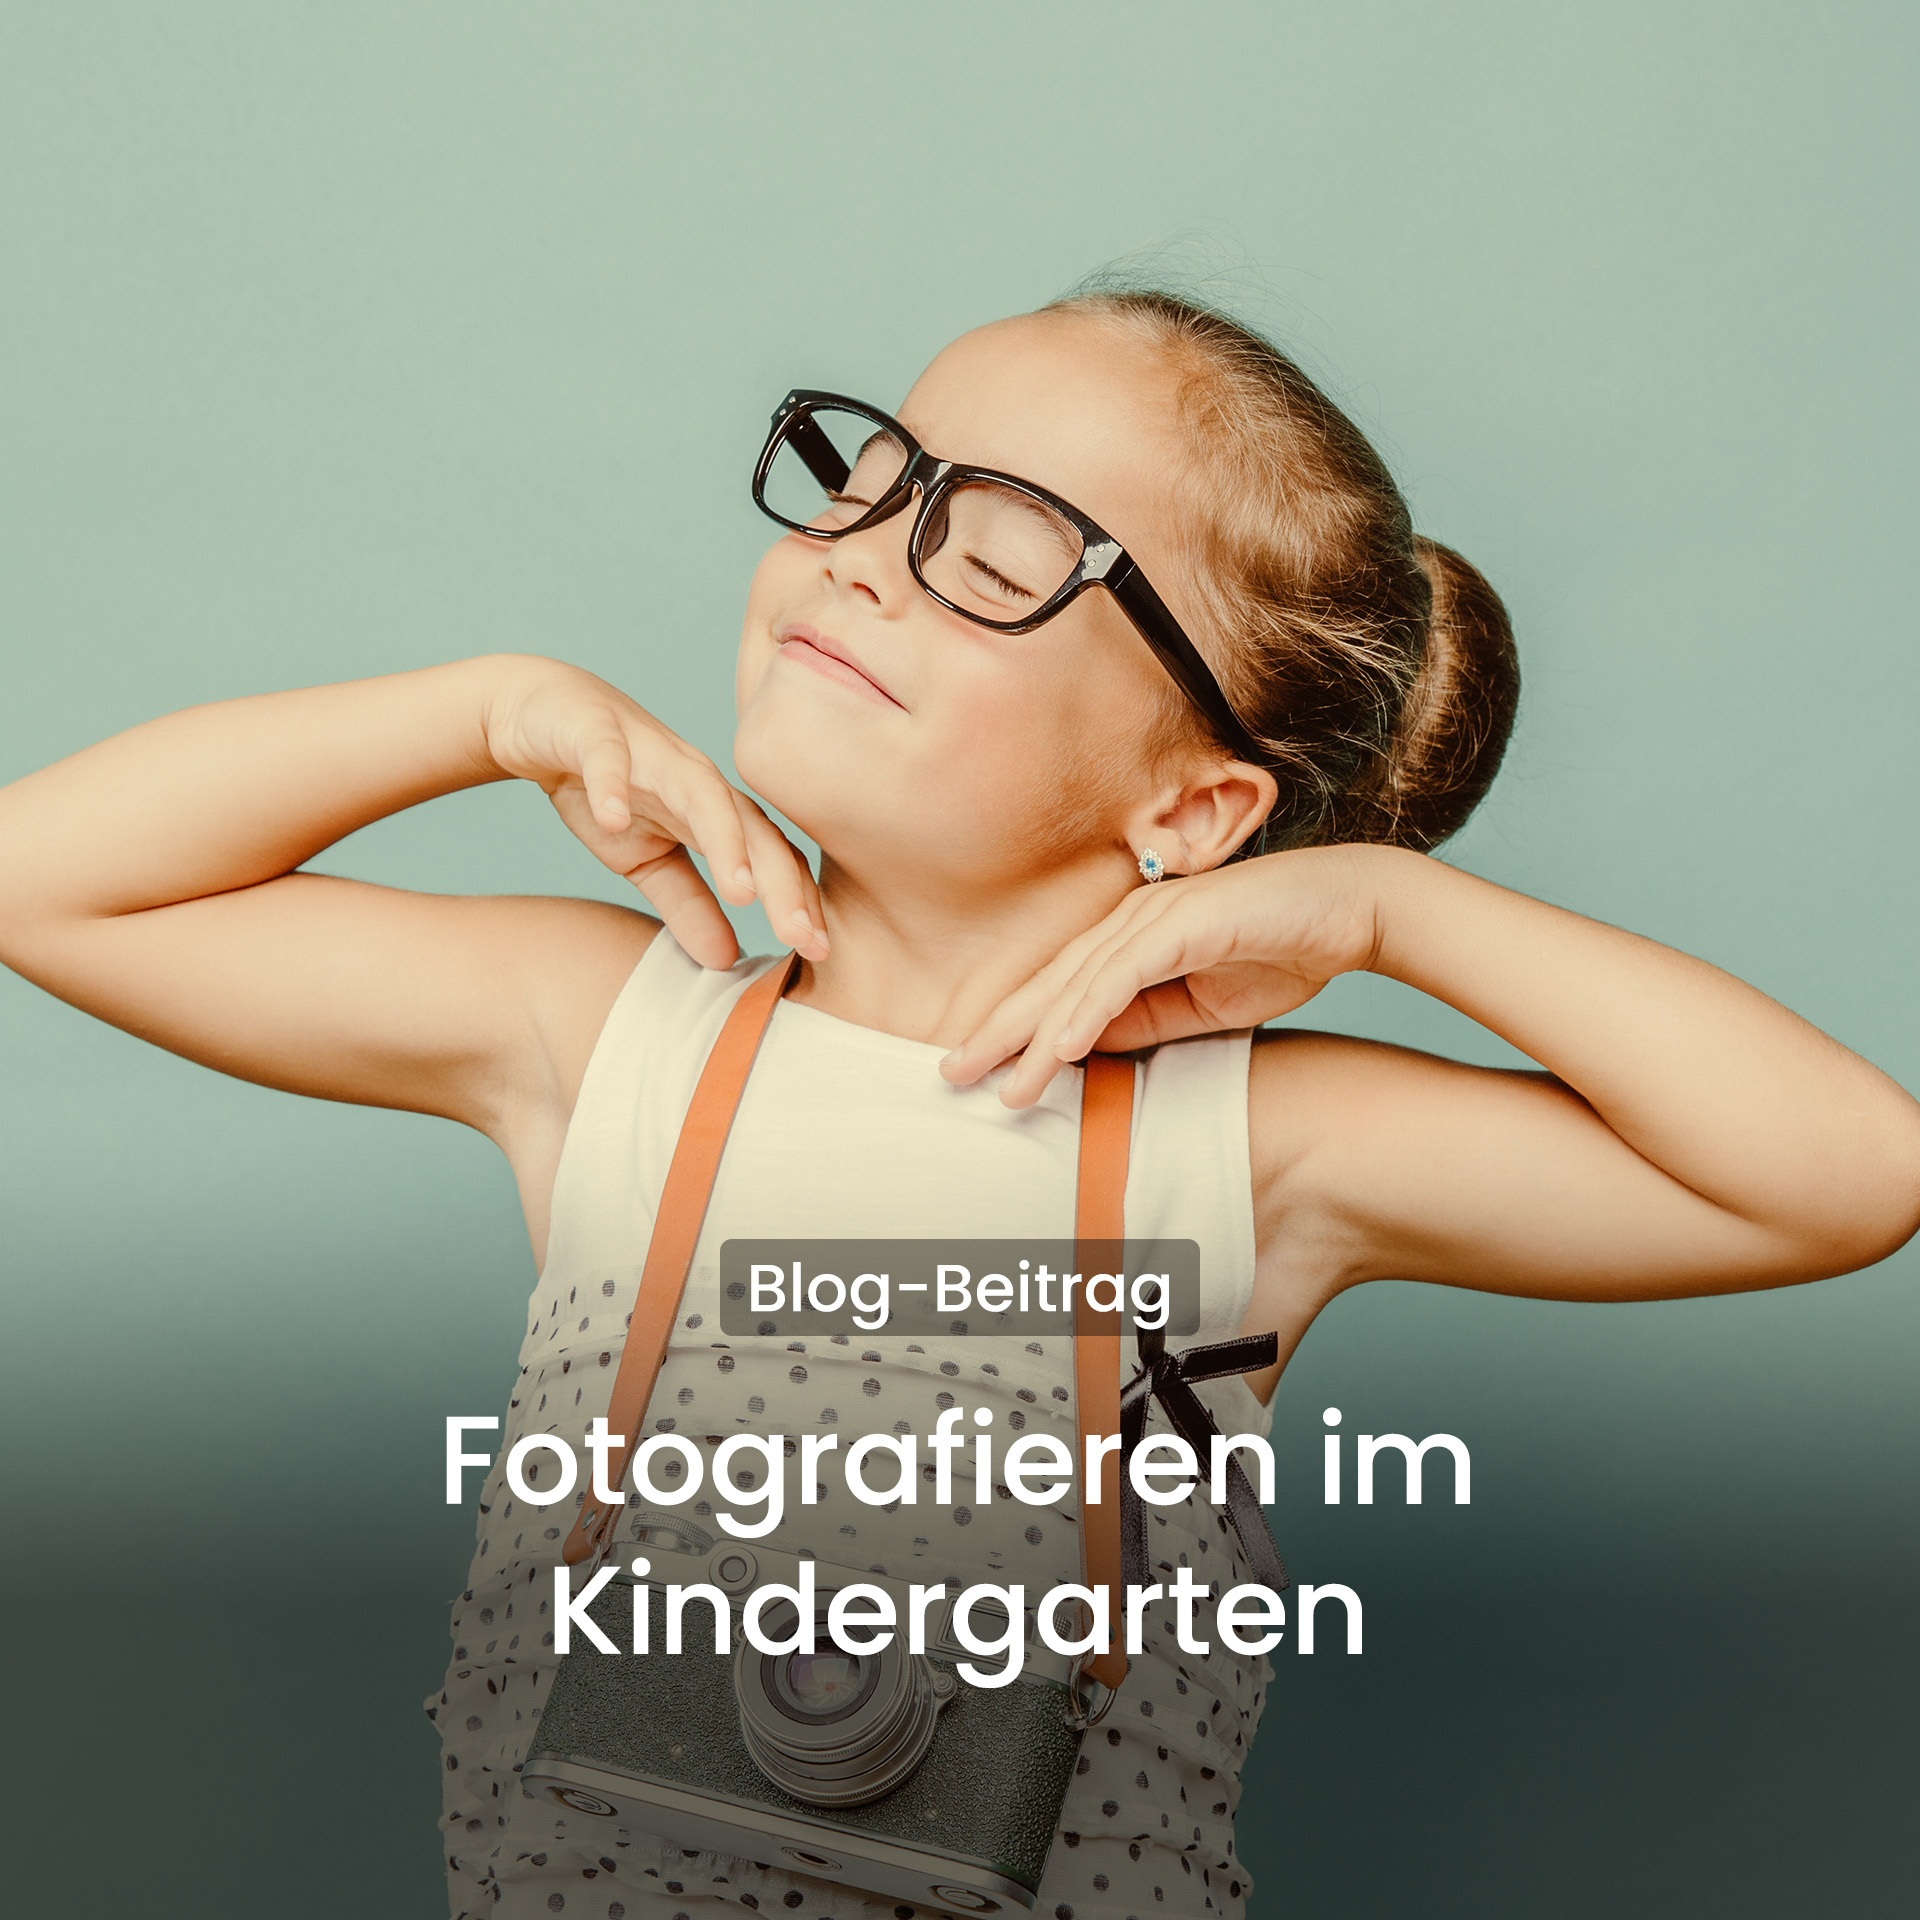 Kindergartenfotografie - so macht das Fotoshooting richtig Spaß